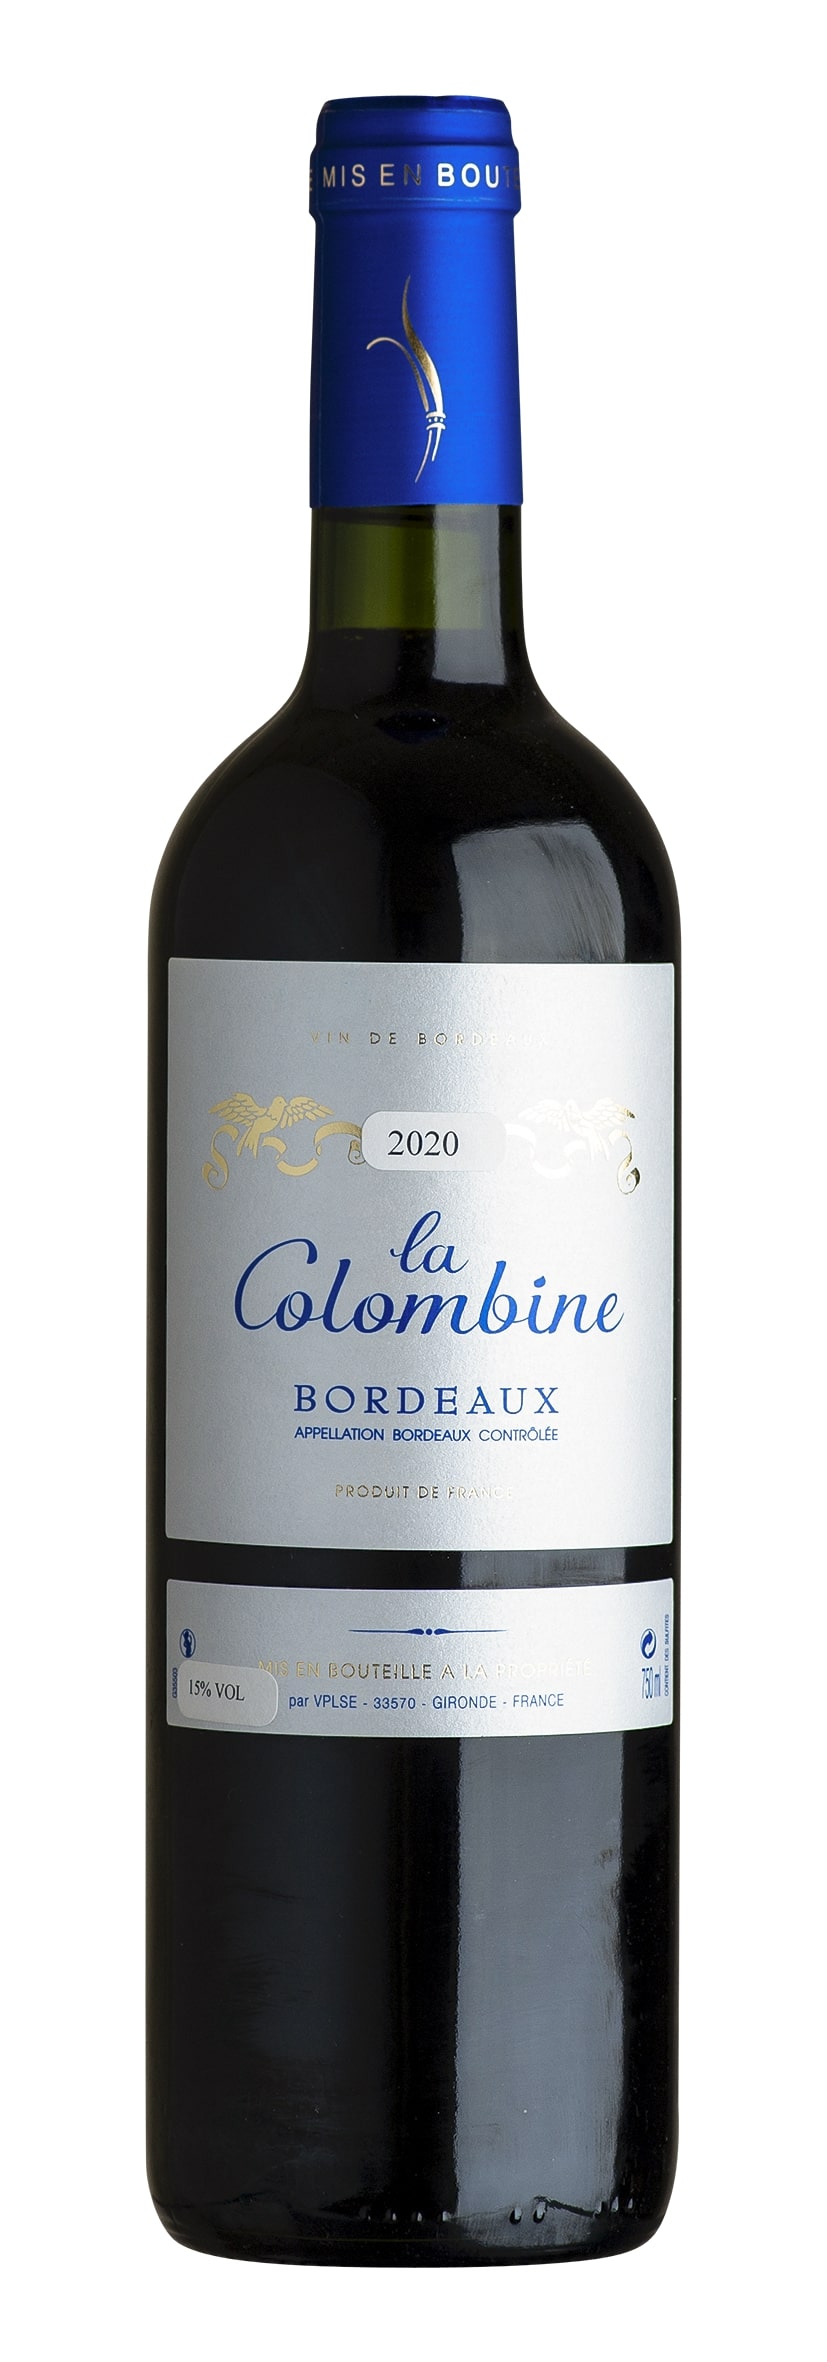 Bordeaux rouge AOC La Colombine 2020